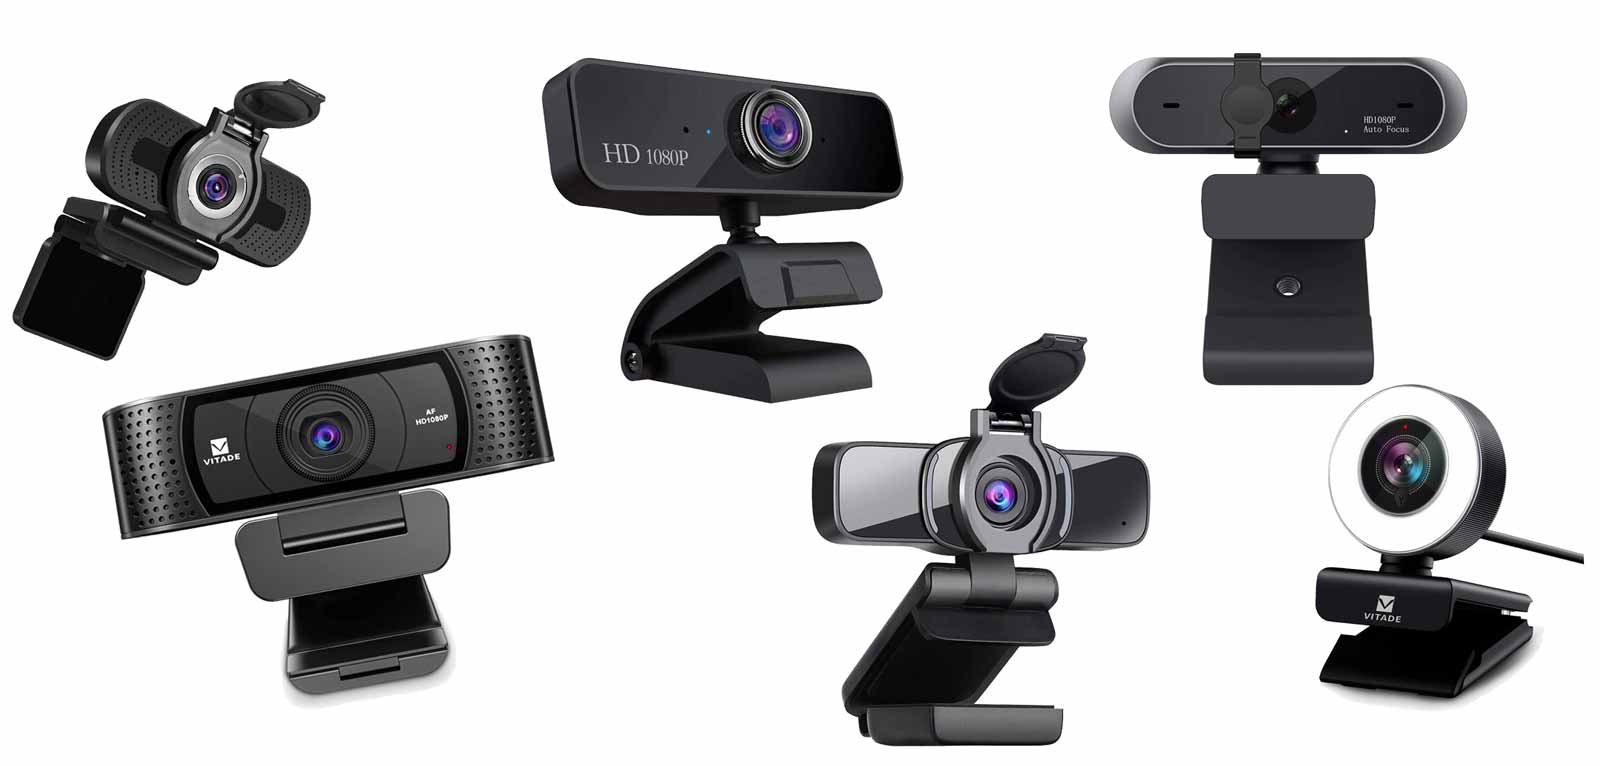 .de Neuerscheinungen: Die beliebtesten Neuheiten in Webcam